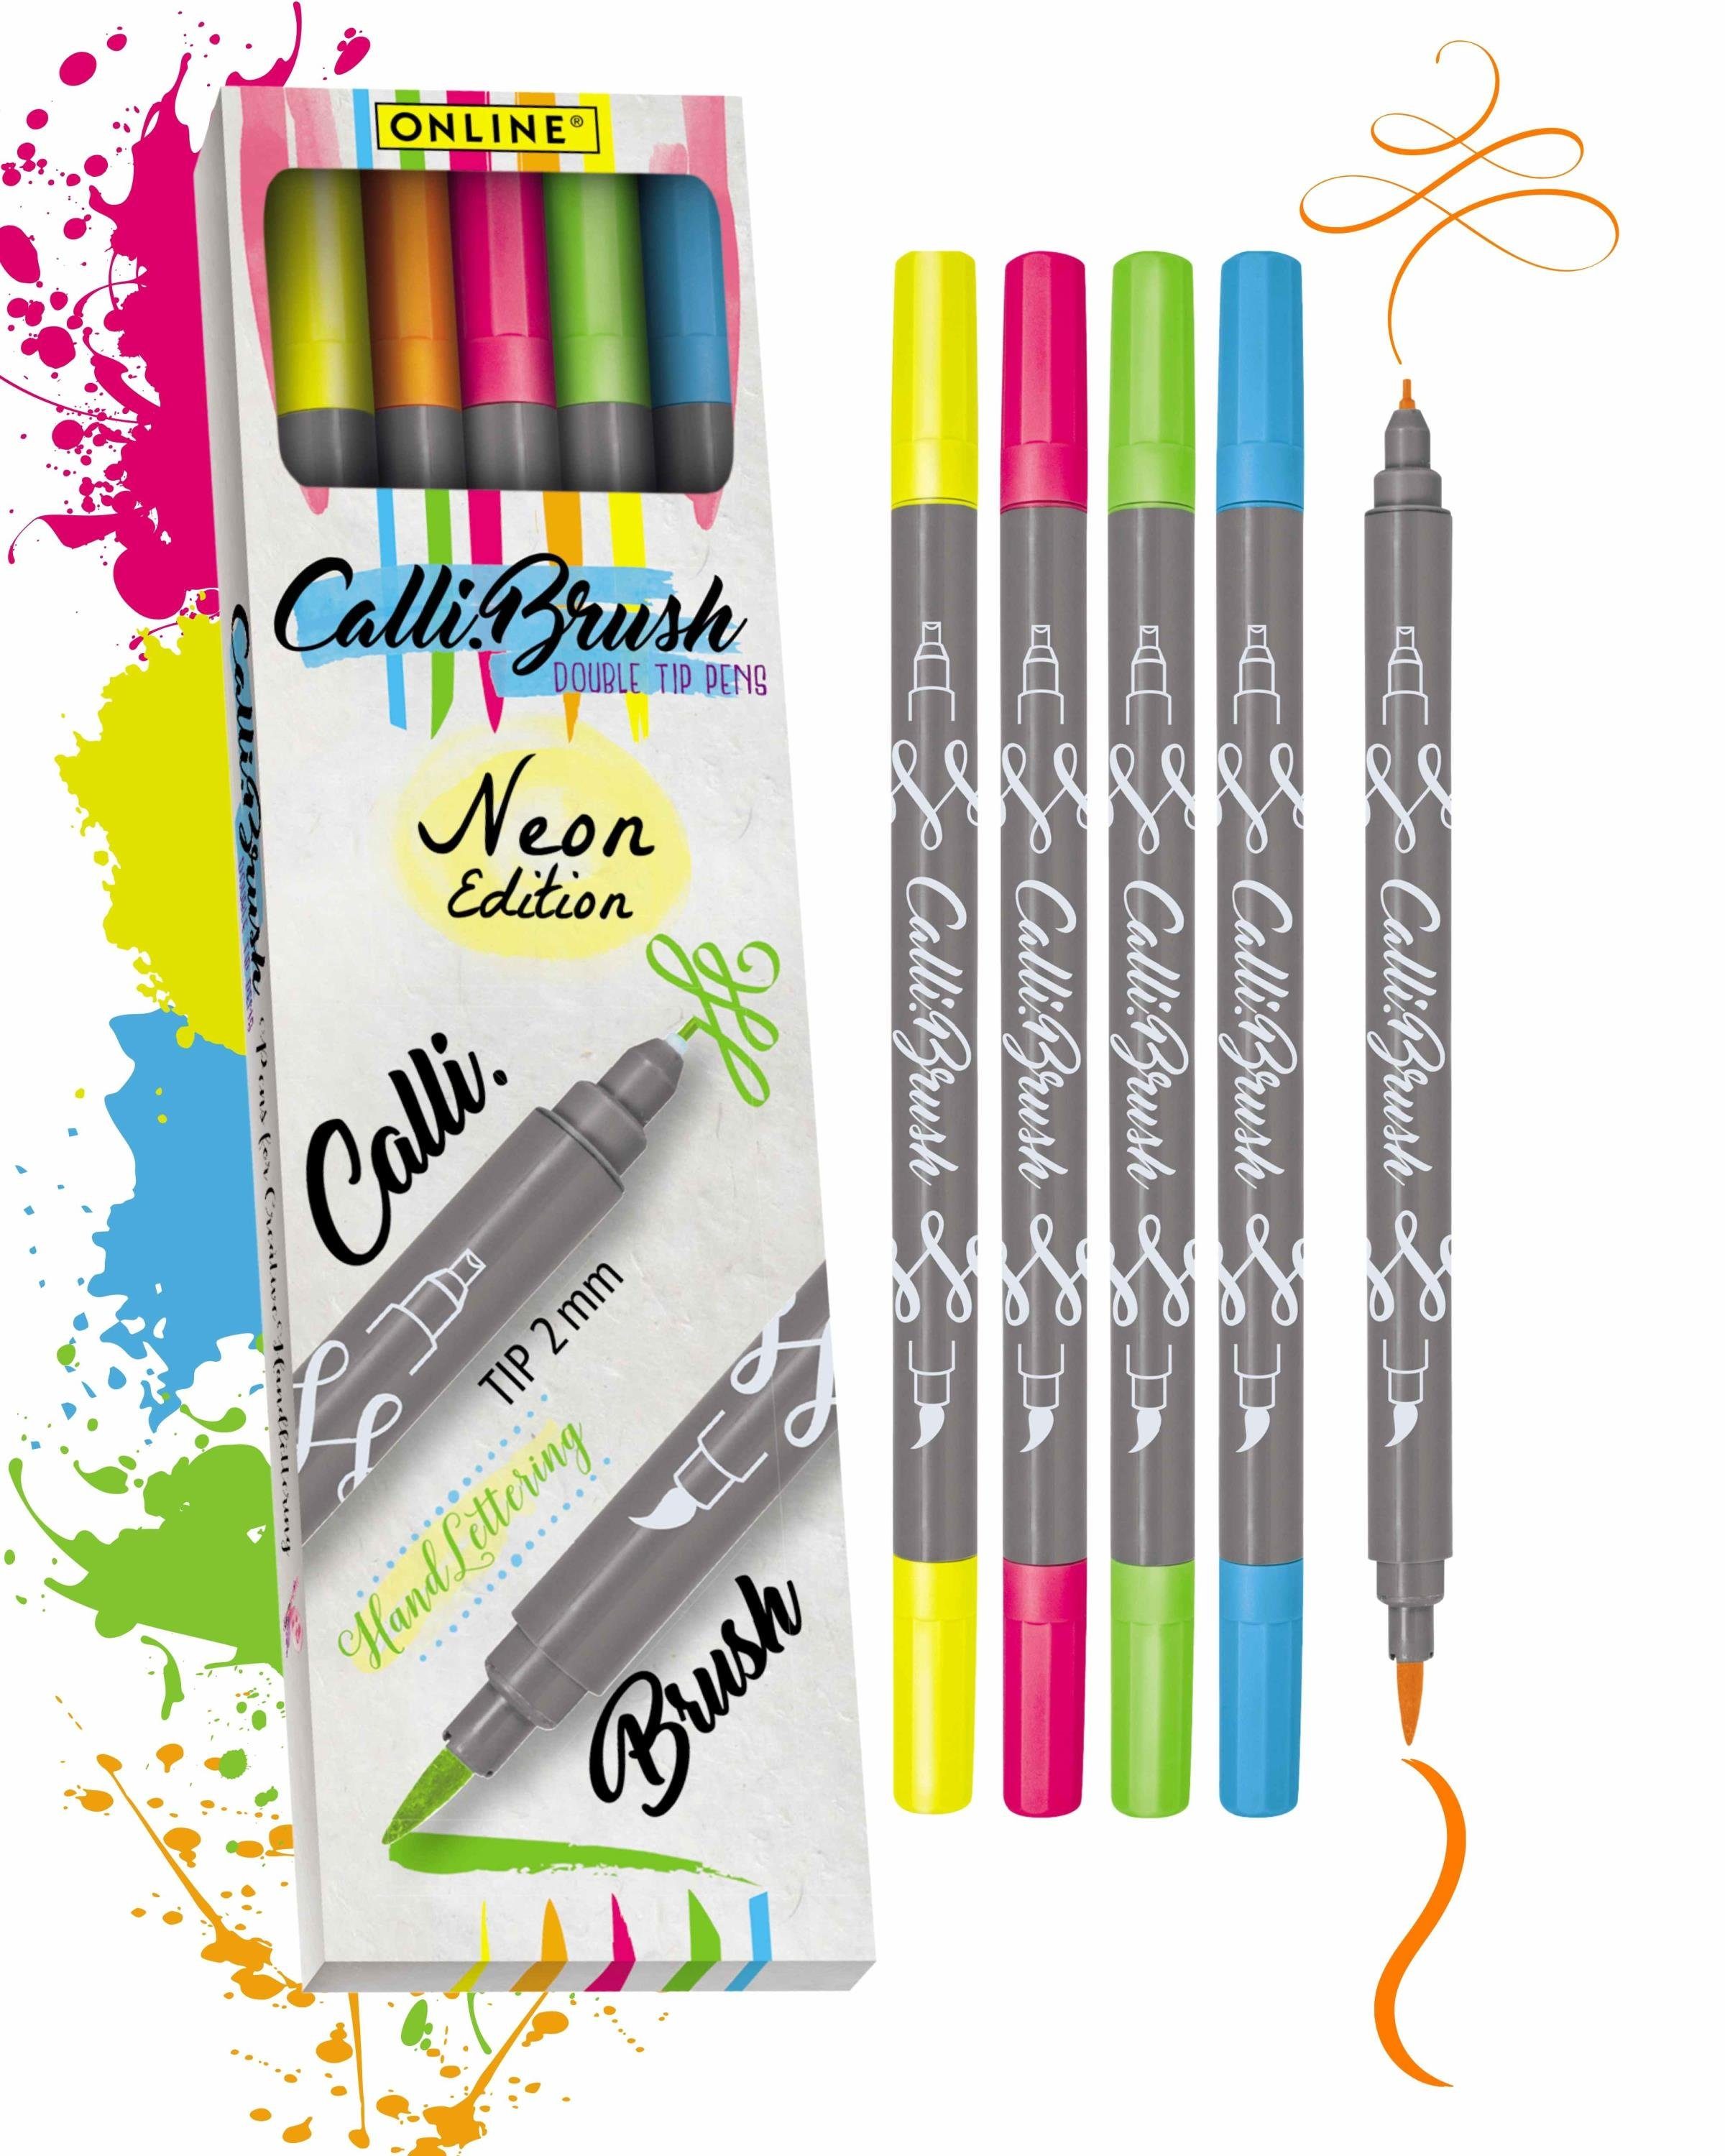 Online Pen Fineliner Calli.Brush, Brush Neon 5x Pens, Spitzen Set, Handlettering verschiedene bunte Stifte